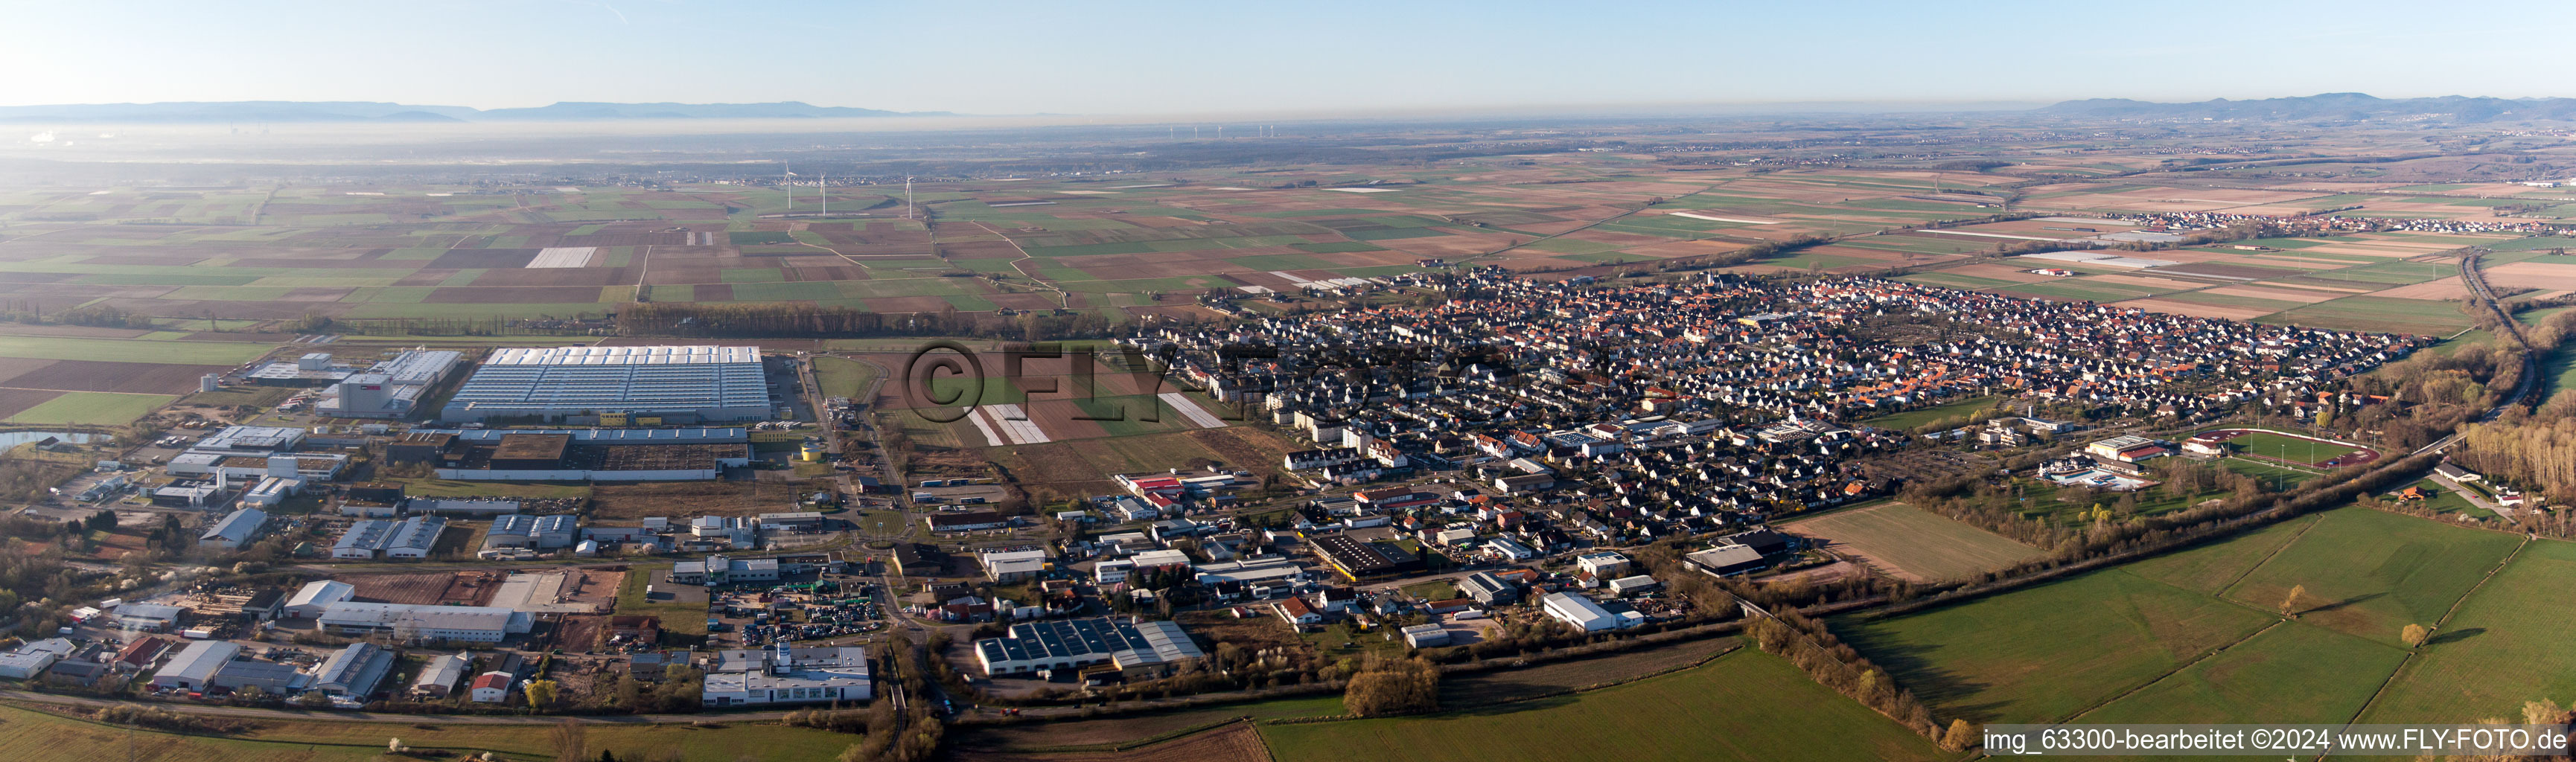 Vue aérienne de Panorama - vue en perspective des rues et des maisons des quartiers résidentiels à Offenbach an der Queich dans le département Rhénanie-Palatinat, Allemagne